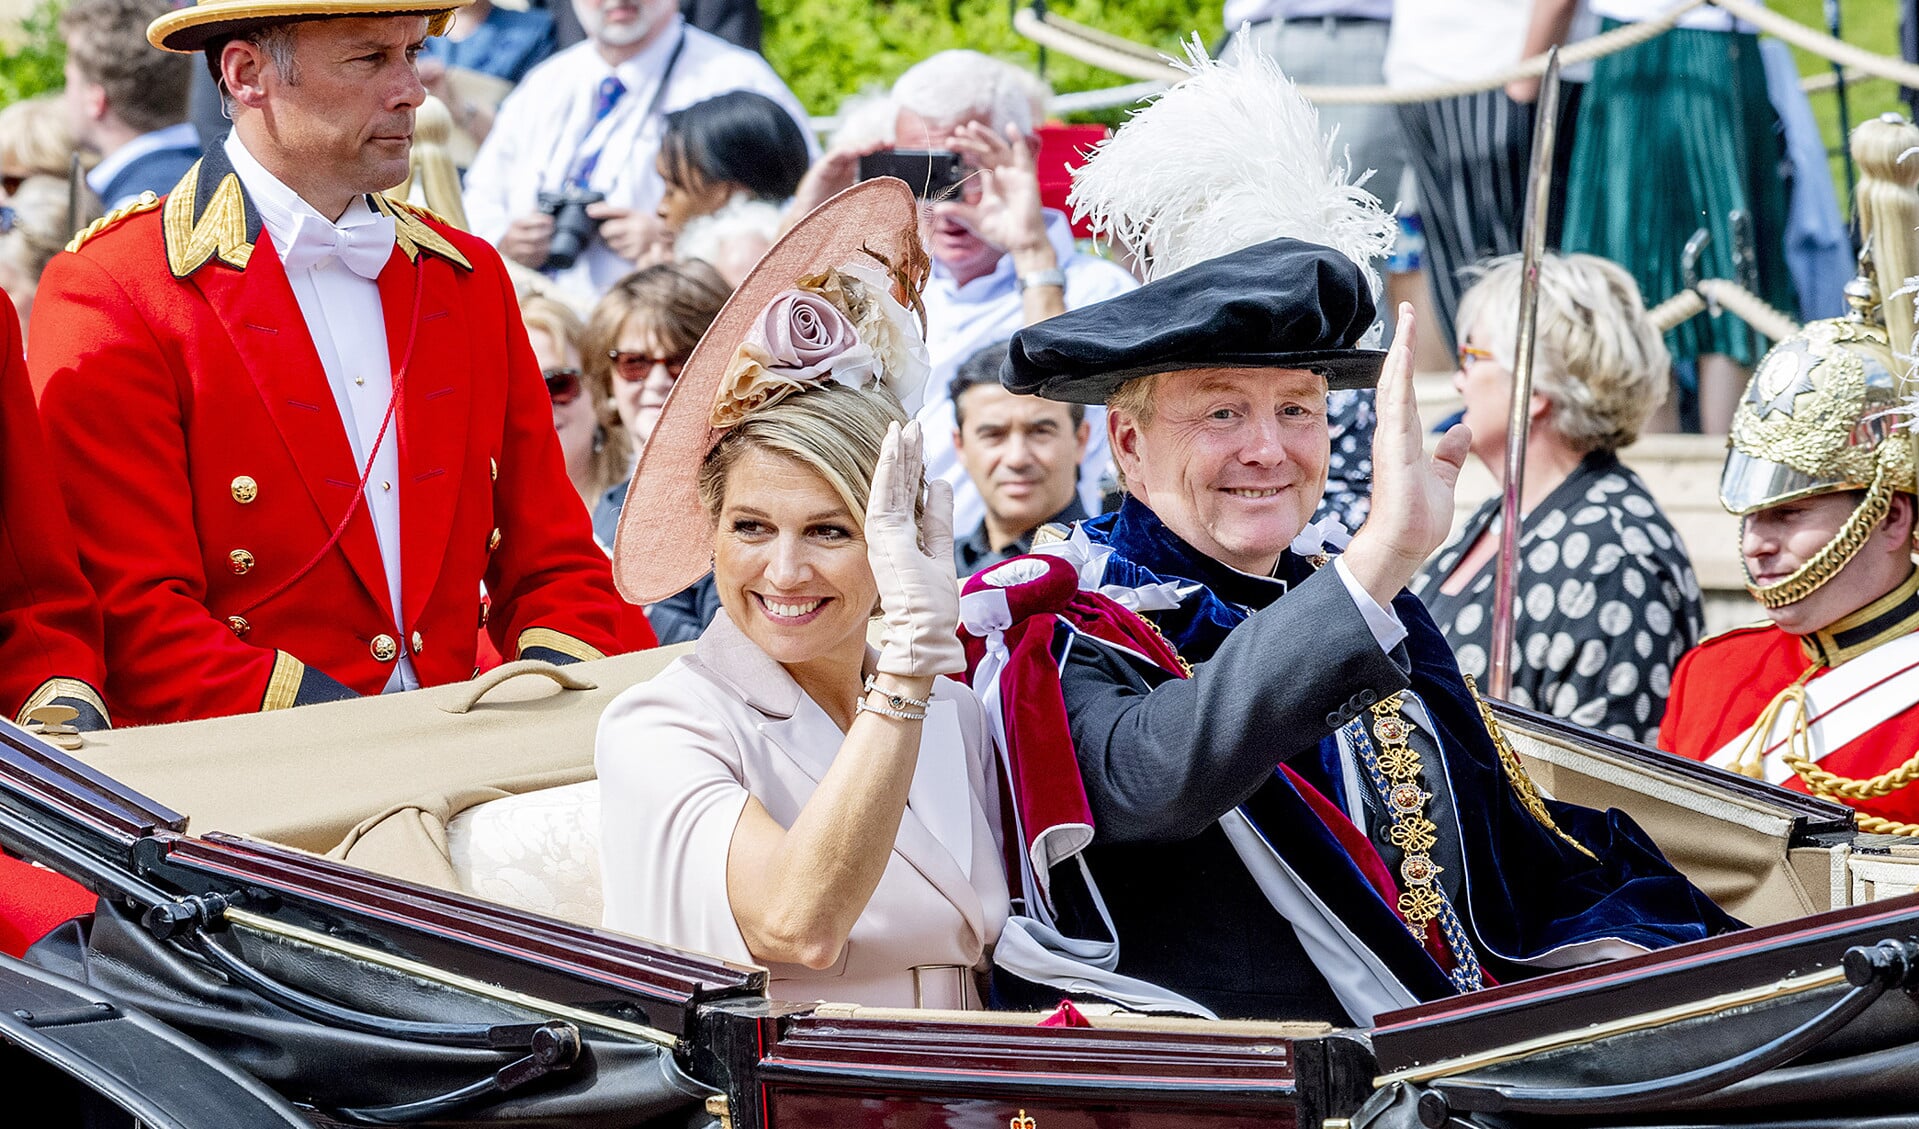 Koning Willem-Alexander treedt toe tot de Most Noble Order of the Garter, als Supernumerary Knight of the Garter.  Die eer viel hem te beurt tijdens het tweedaags staatsbezoek van het koninklijk paar aan Windsor in het Verenigd Koninkrijk